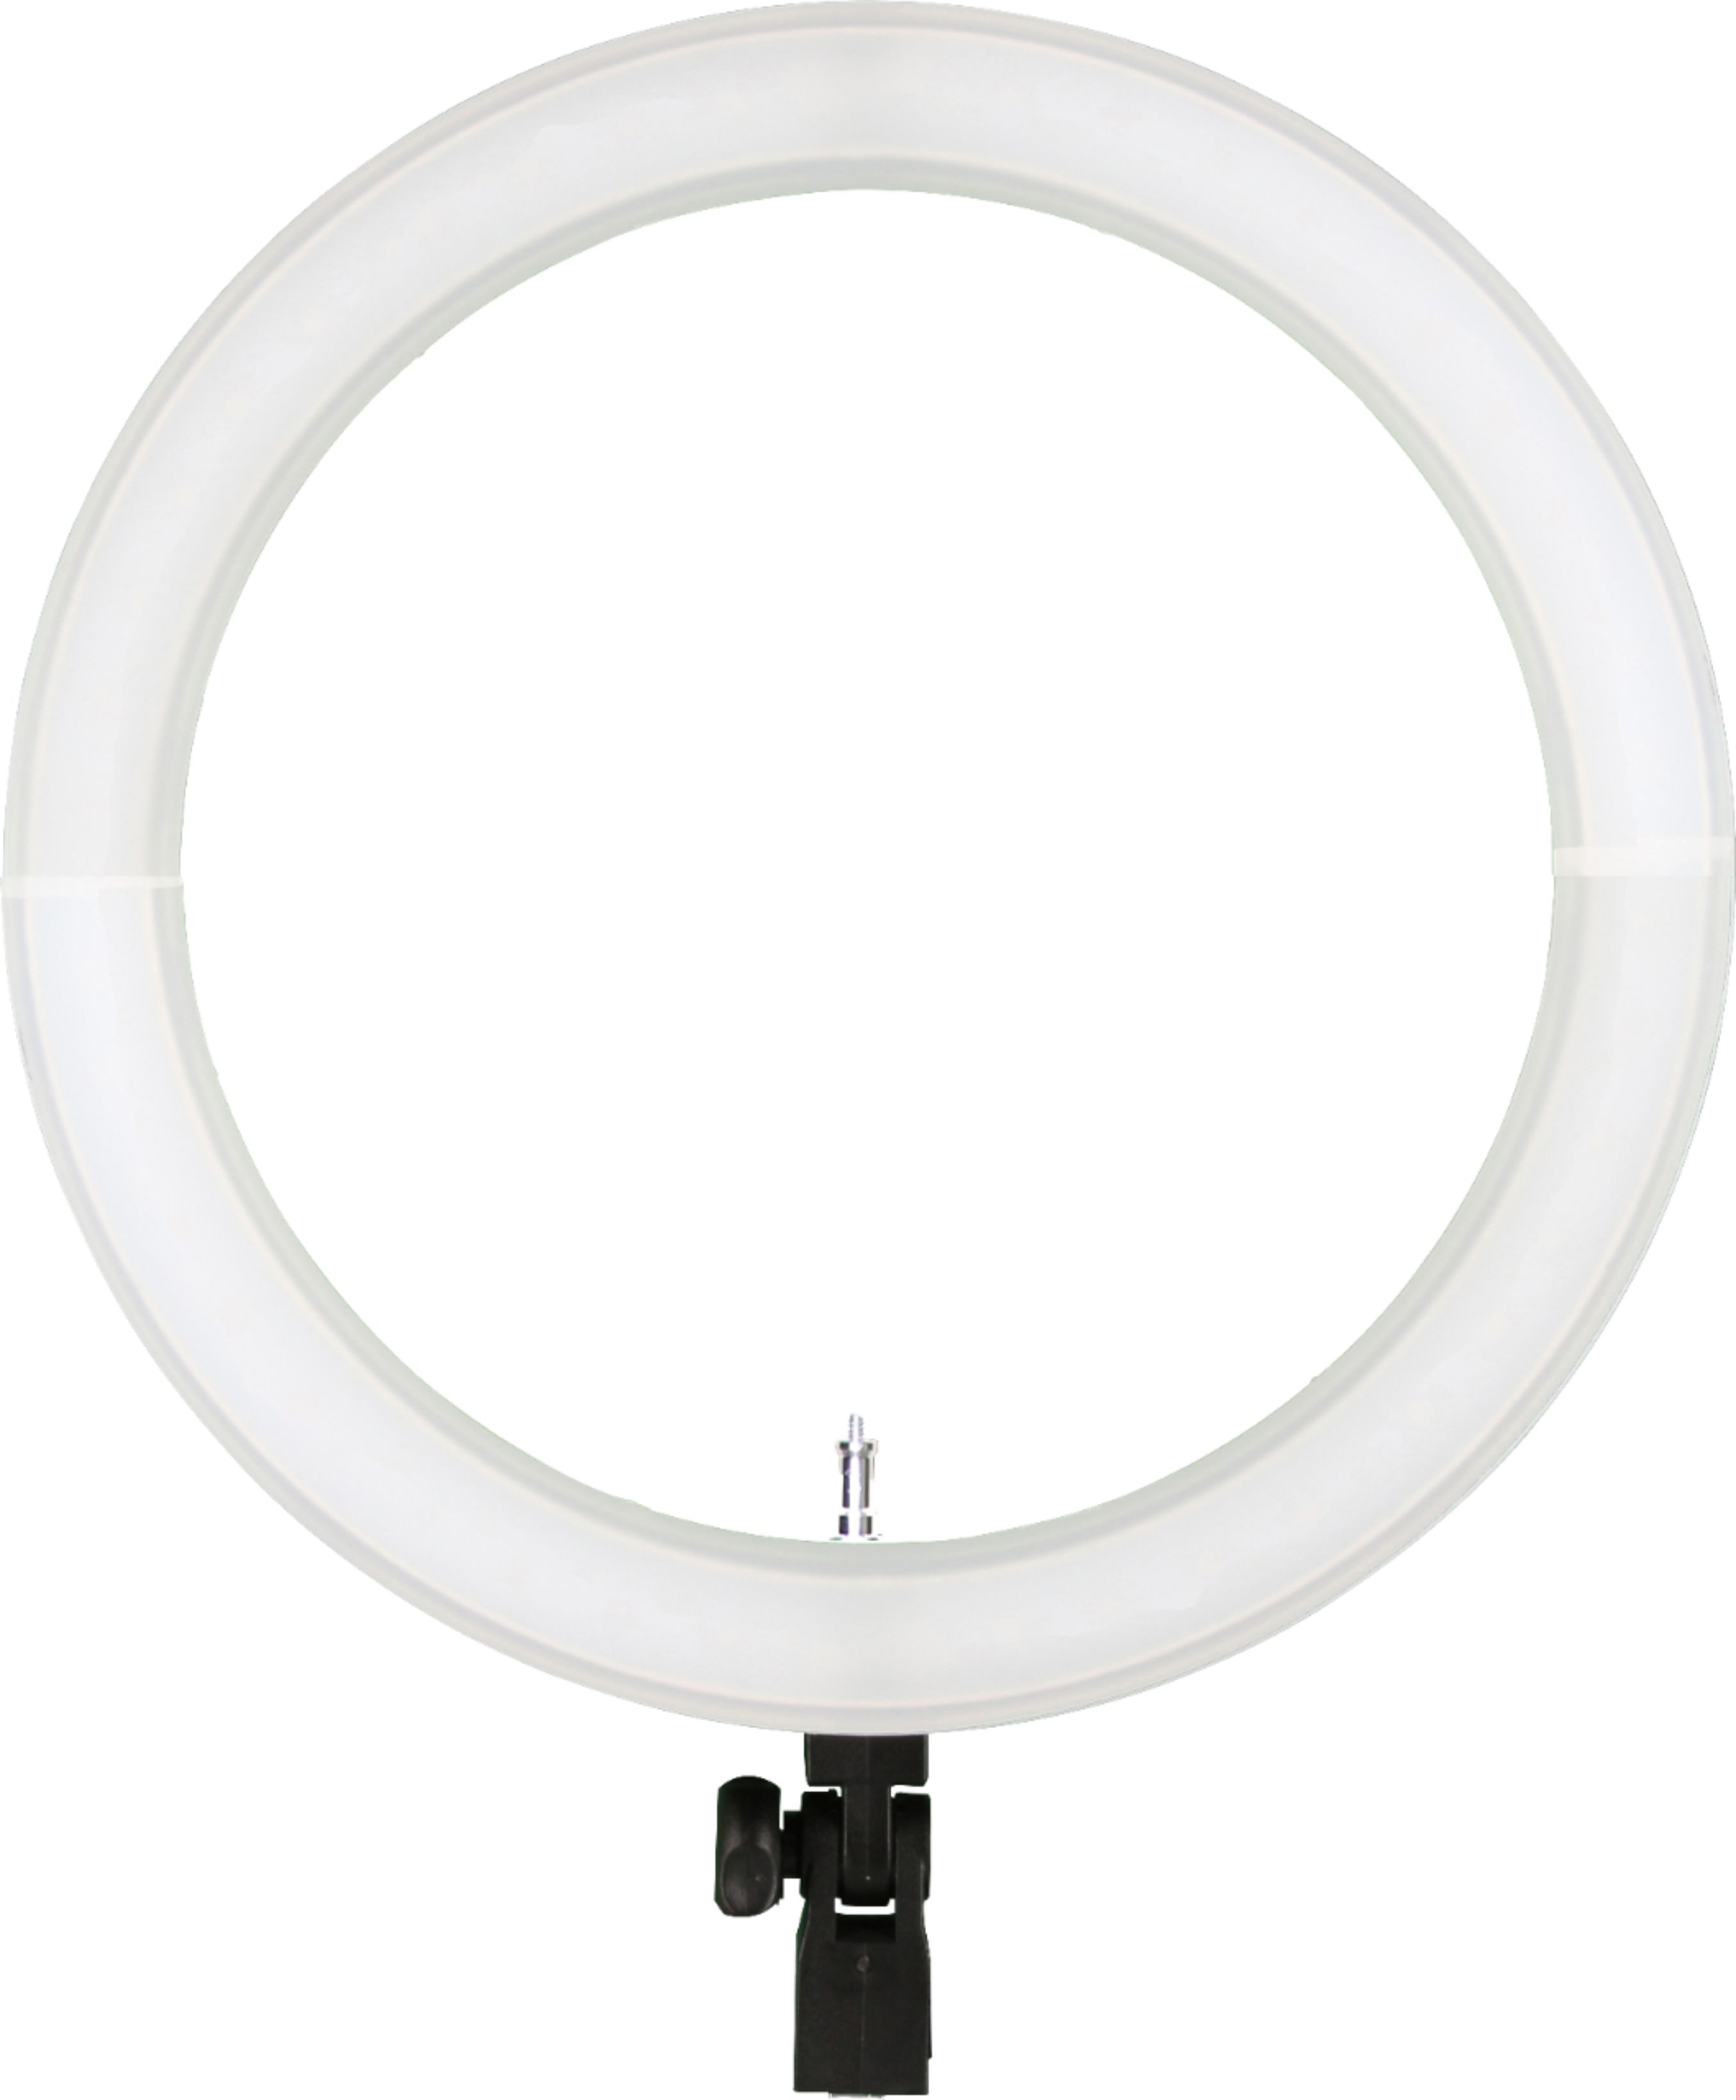 Sunpak LED 448 19" BiColor Ring Light Black VLLED44819RK Best Buy